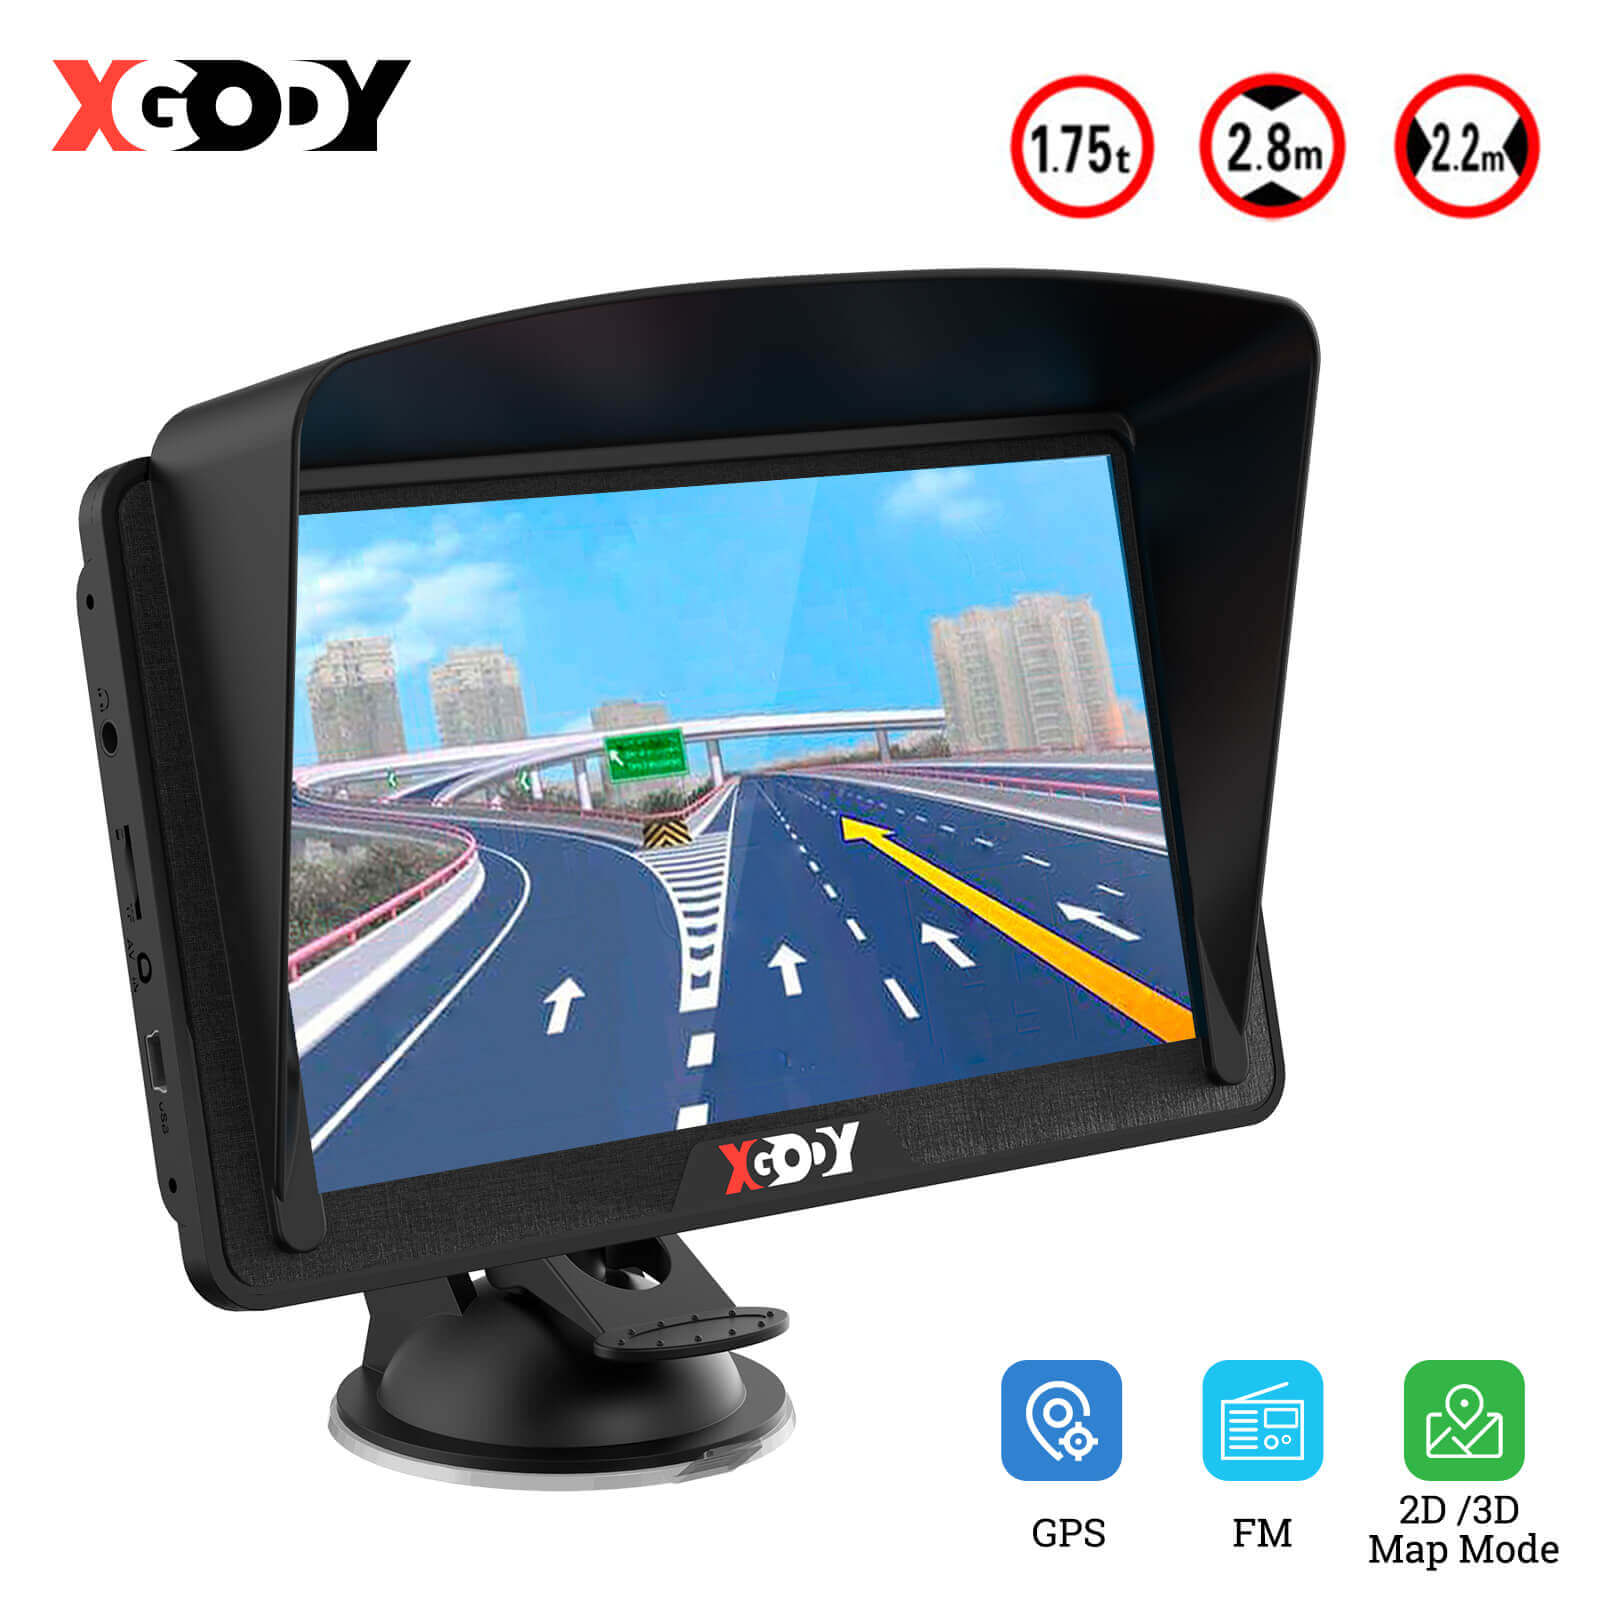 XGODY886BT | 7-Zoll-GPS-LKW-Navigationssystem, Easy Raed-Touchscreen-Display, benutzerdefiniertes Routing und Rampenführung